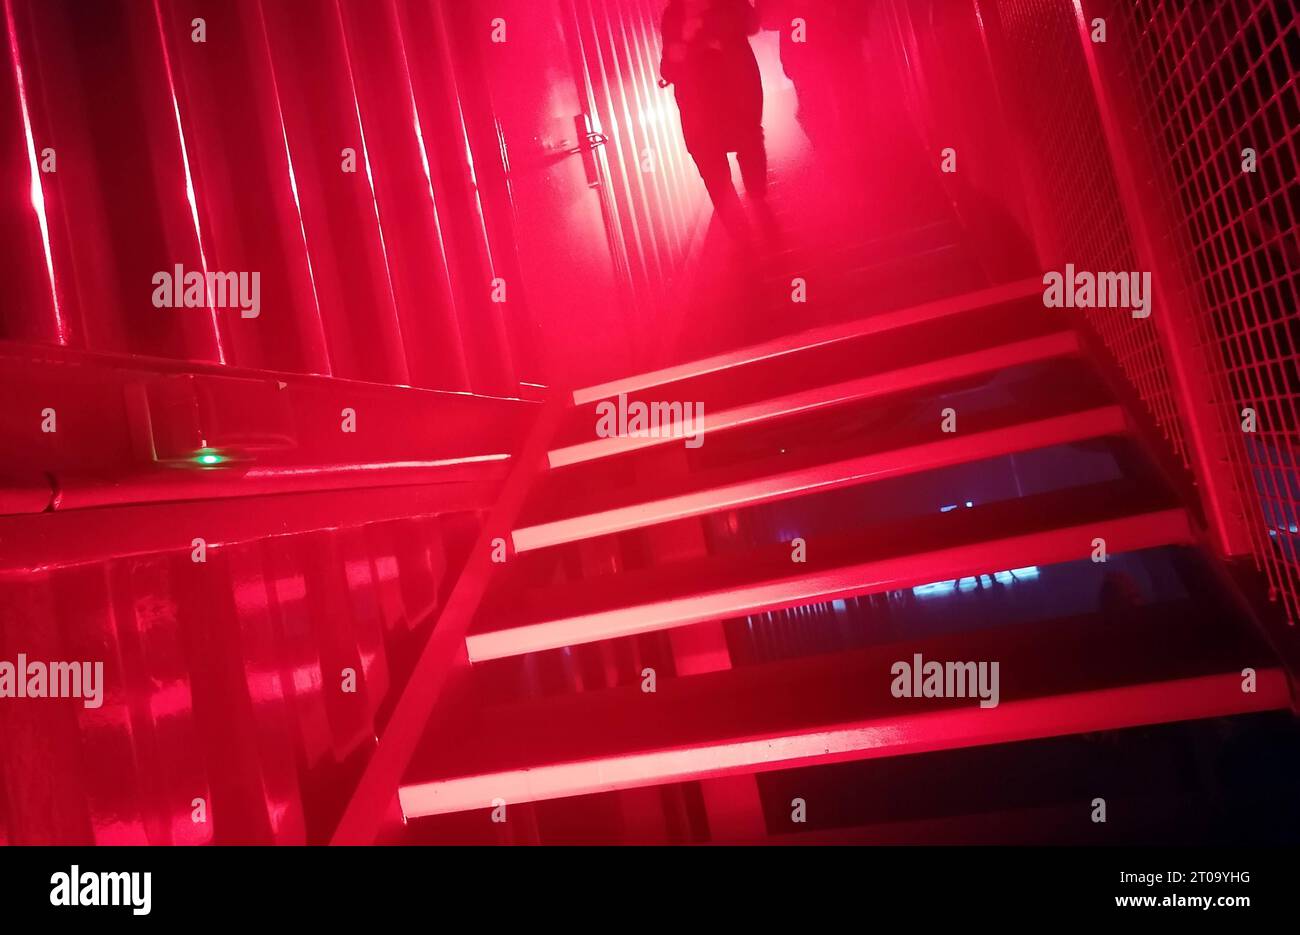 Berlin - Deutschland. Rot beleuchtete Treppe führt nach unten oder oben. *** Berlin Germany Red Illuminated Stairs Leads Down or Up Stock Photo